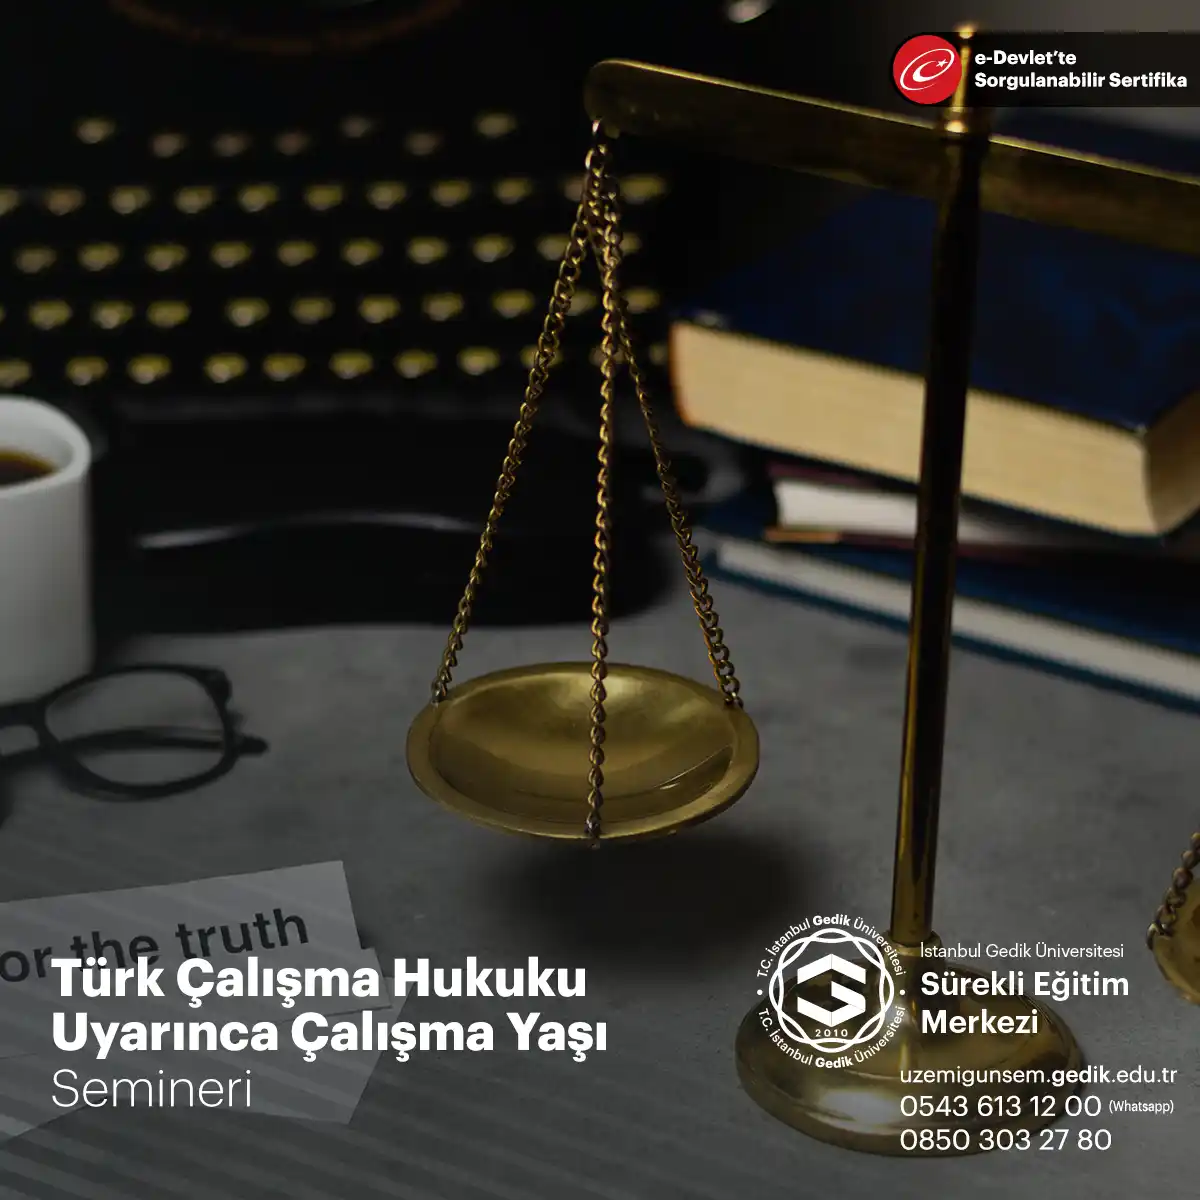 Türk Çalışma Hukuku'na göre, çalışma yaşının belirlenmesi ve korunması çocuk işçiliğinin önlenmesi açısından büyük önem taşımaktadır. 